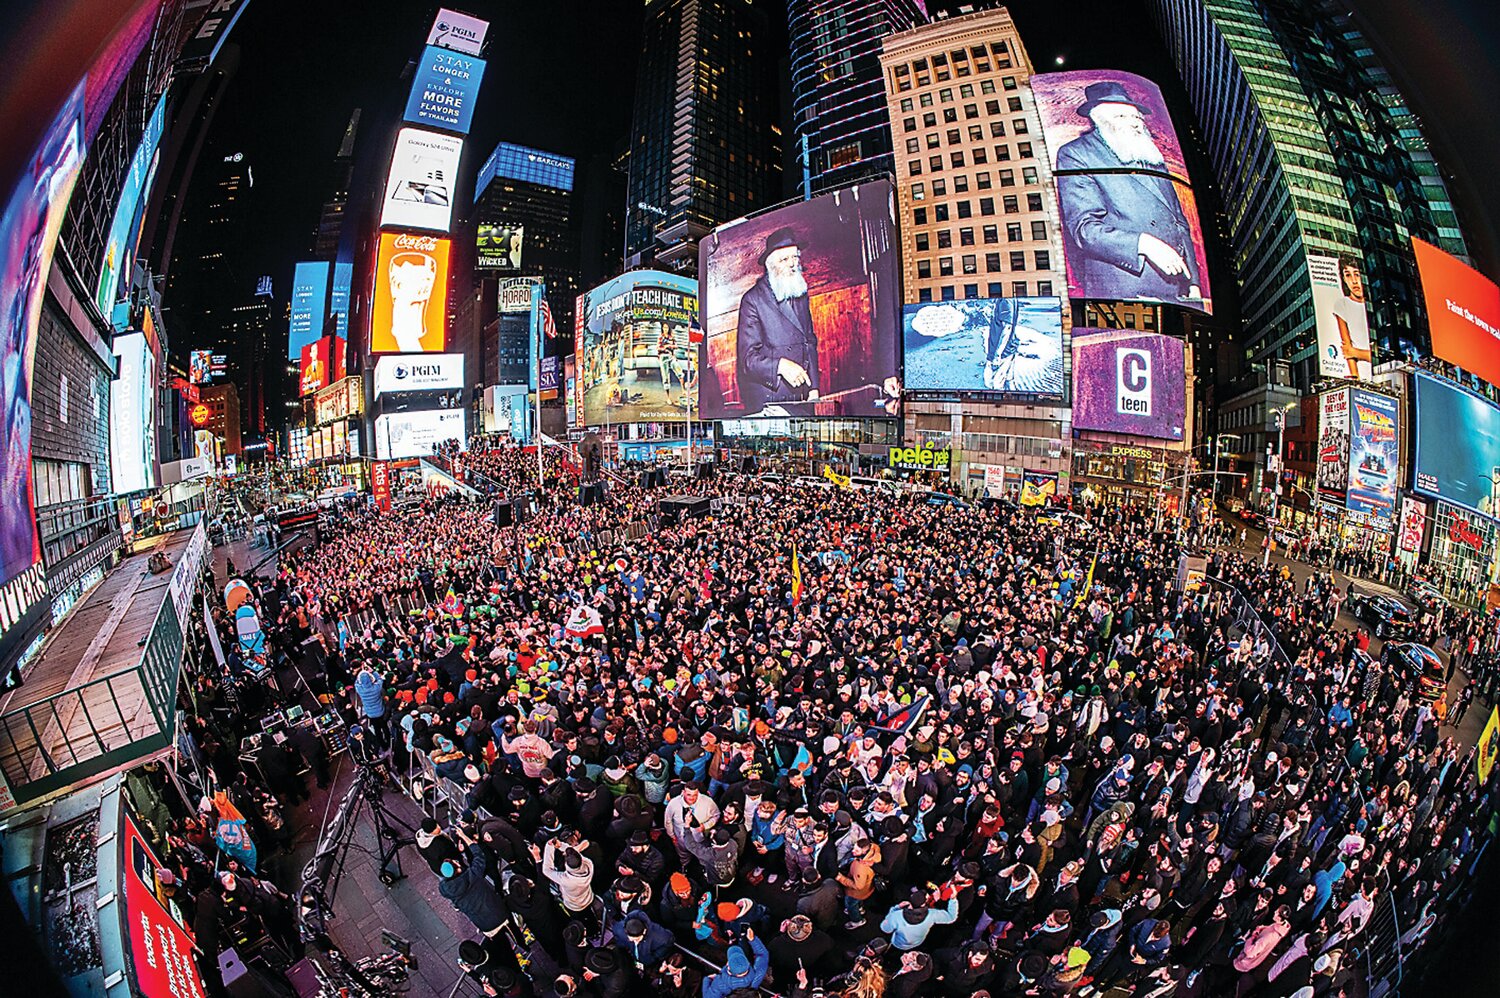 The international Jewish teen summit Times Square Jewish pride event draws a crowd.